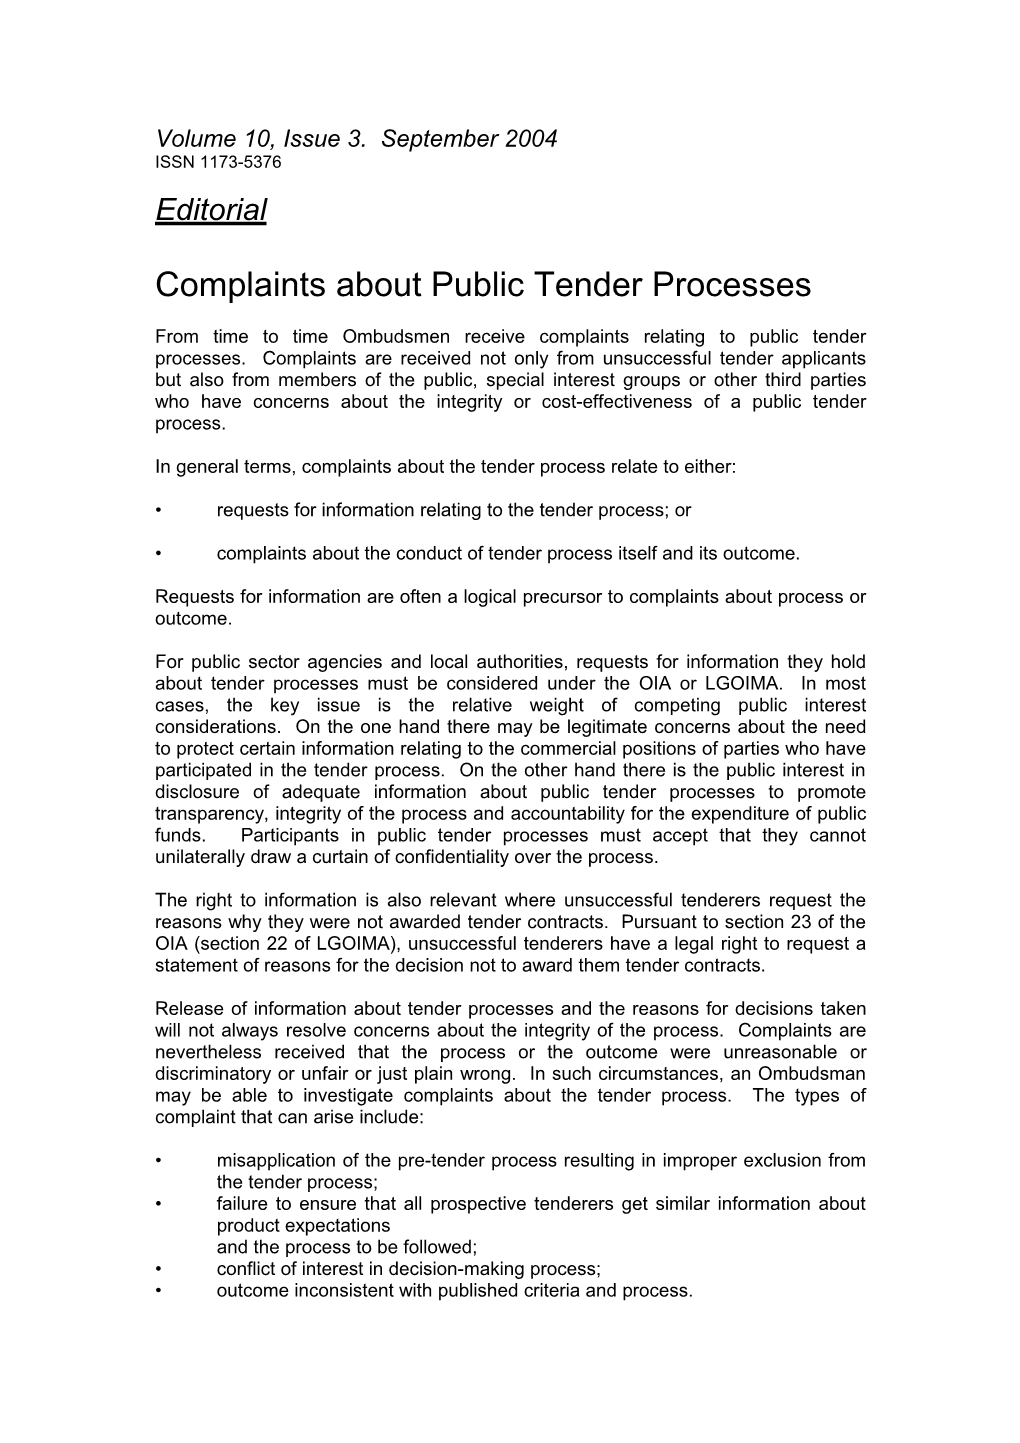 Complaints About Public Tender Processes